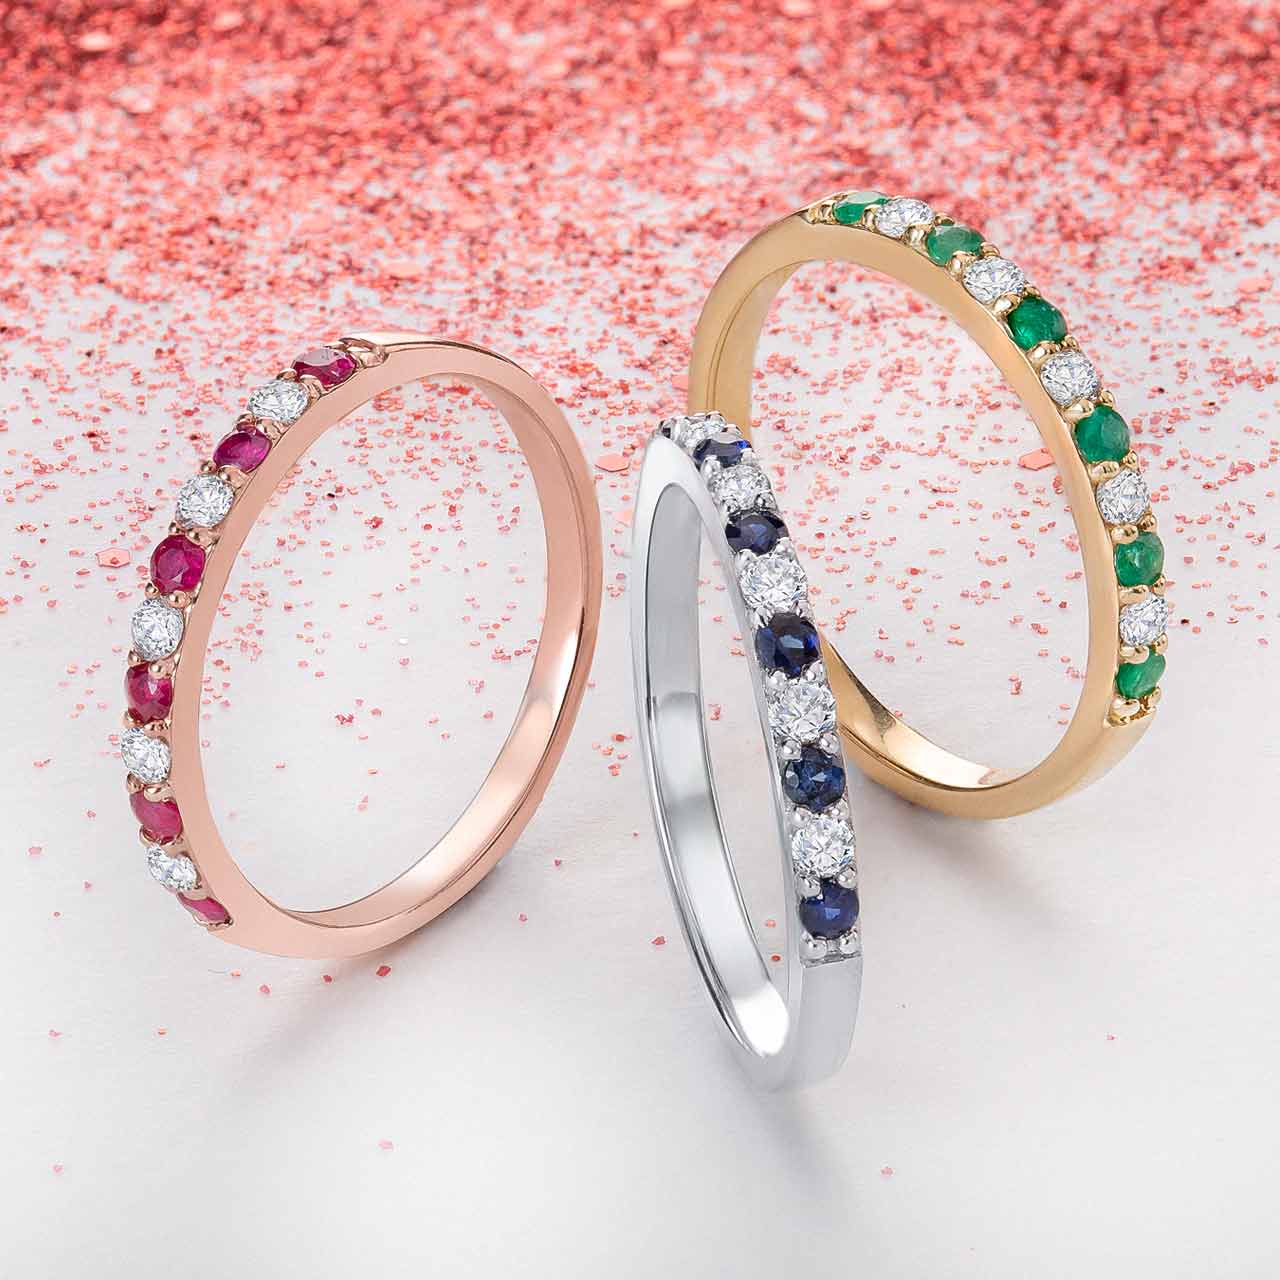 combinar anillos de tes colores con rubíes, zafiros o esmeraldas